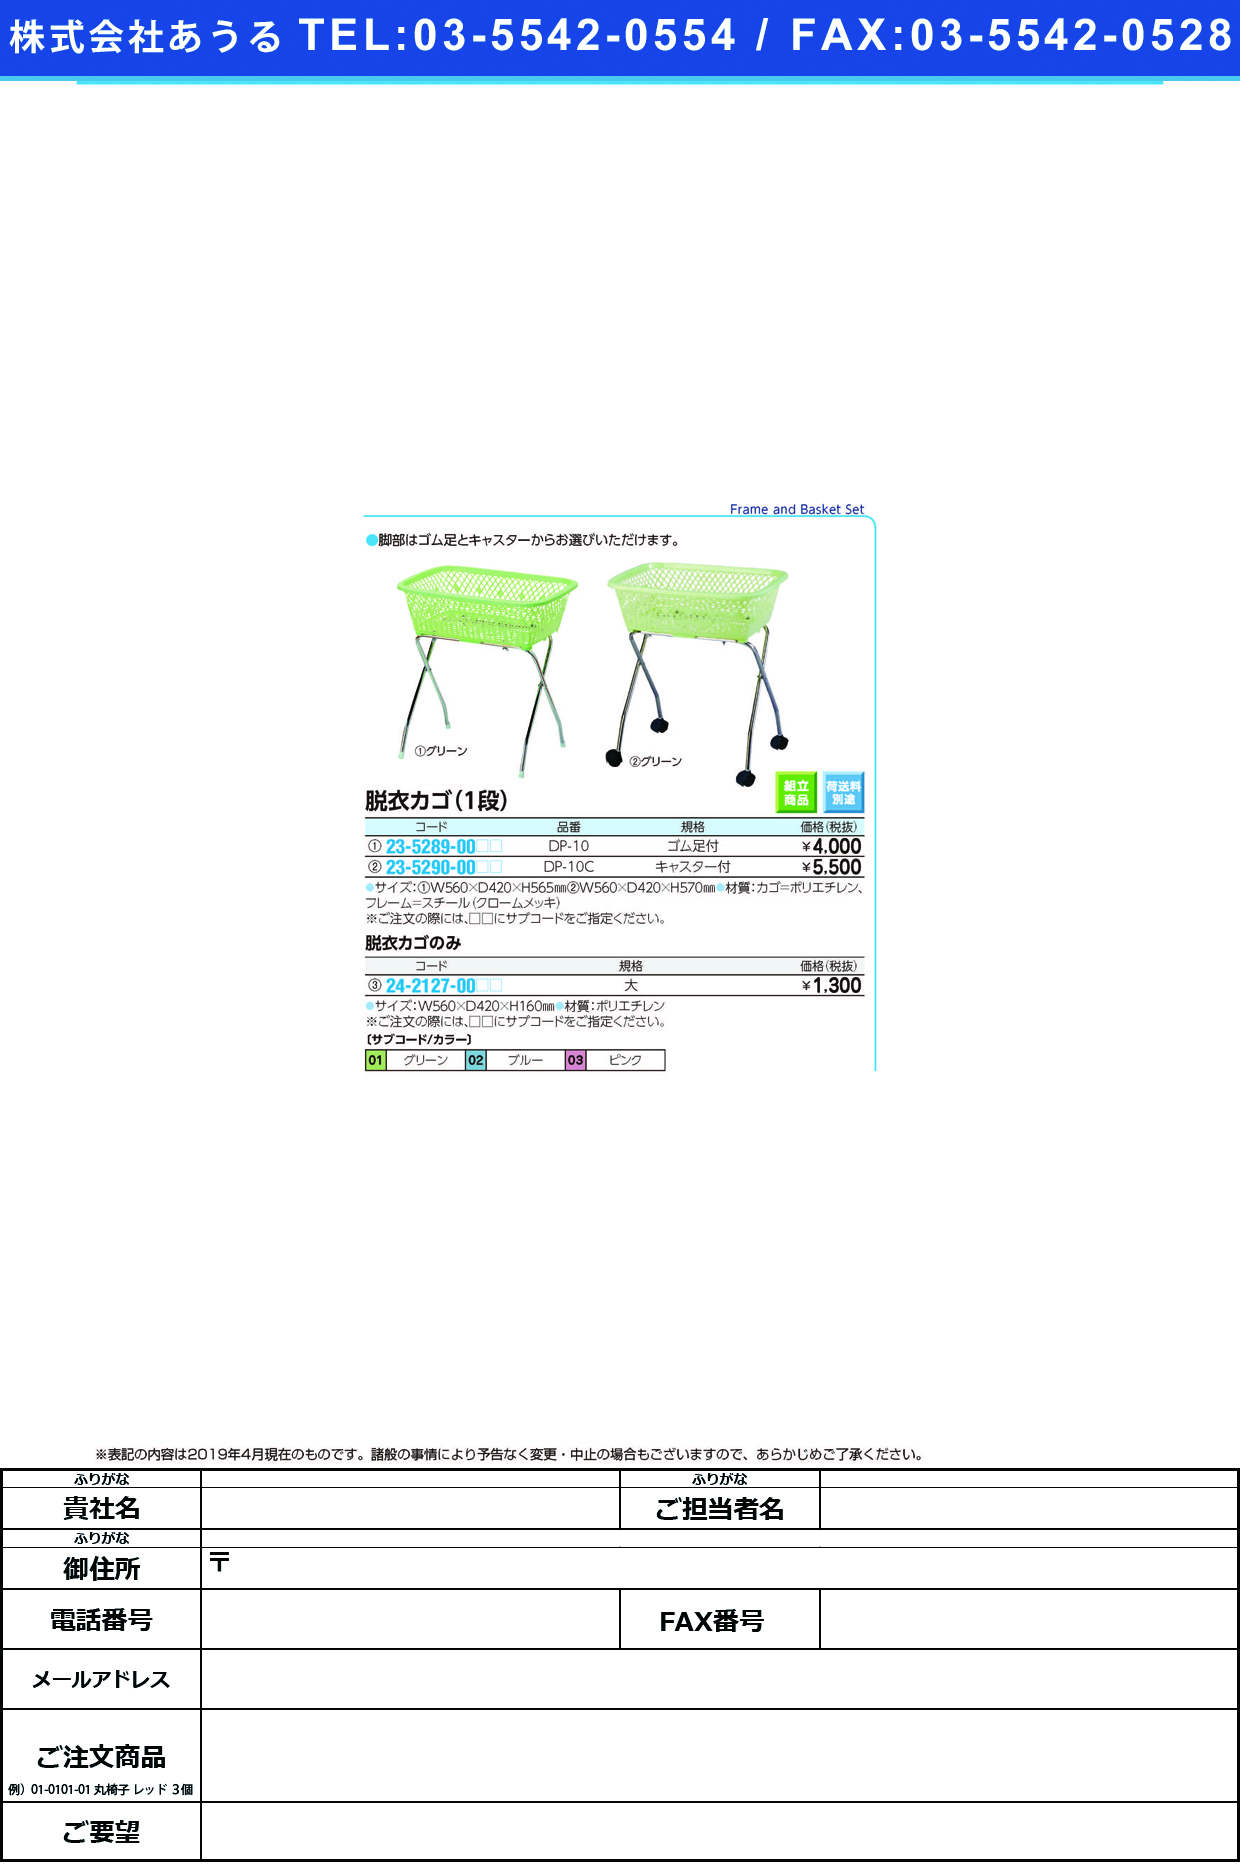 (23-5289-00)脱衣カゴ DP-10(ｺﾞﾑｱｼﾂｷ) ﾀﾞﾂｲｶｺﾞ ピンク【1台単位】【2019年カタログ商品】